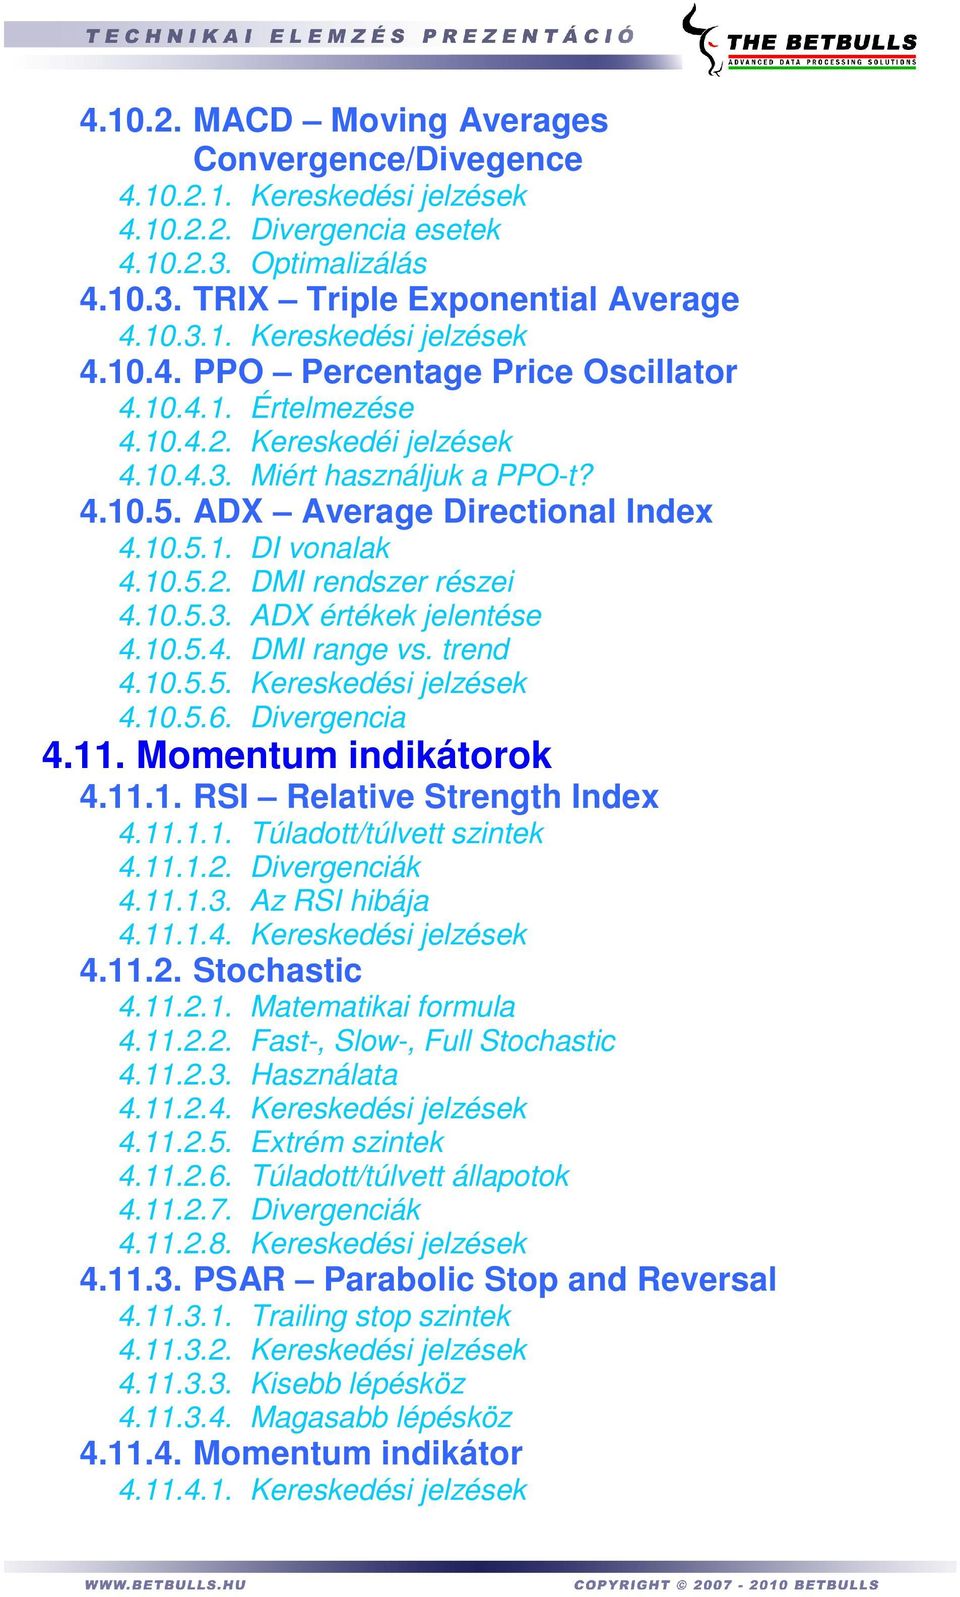 10.5.4. DMI range vs. trend 4.10.5.5. Kereskedési jelzések 4.10.5.6. Divergencia 4.11. Momentum indikátorok 4.11.1. RSI Relative Strength Index 4.11.1.1. Túladott/túlvett szintek 4.11.1.2.